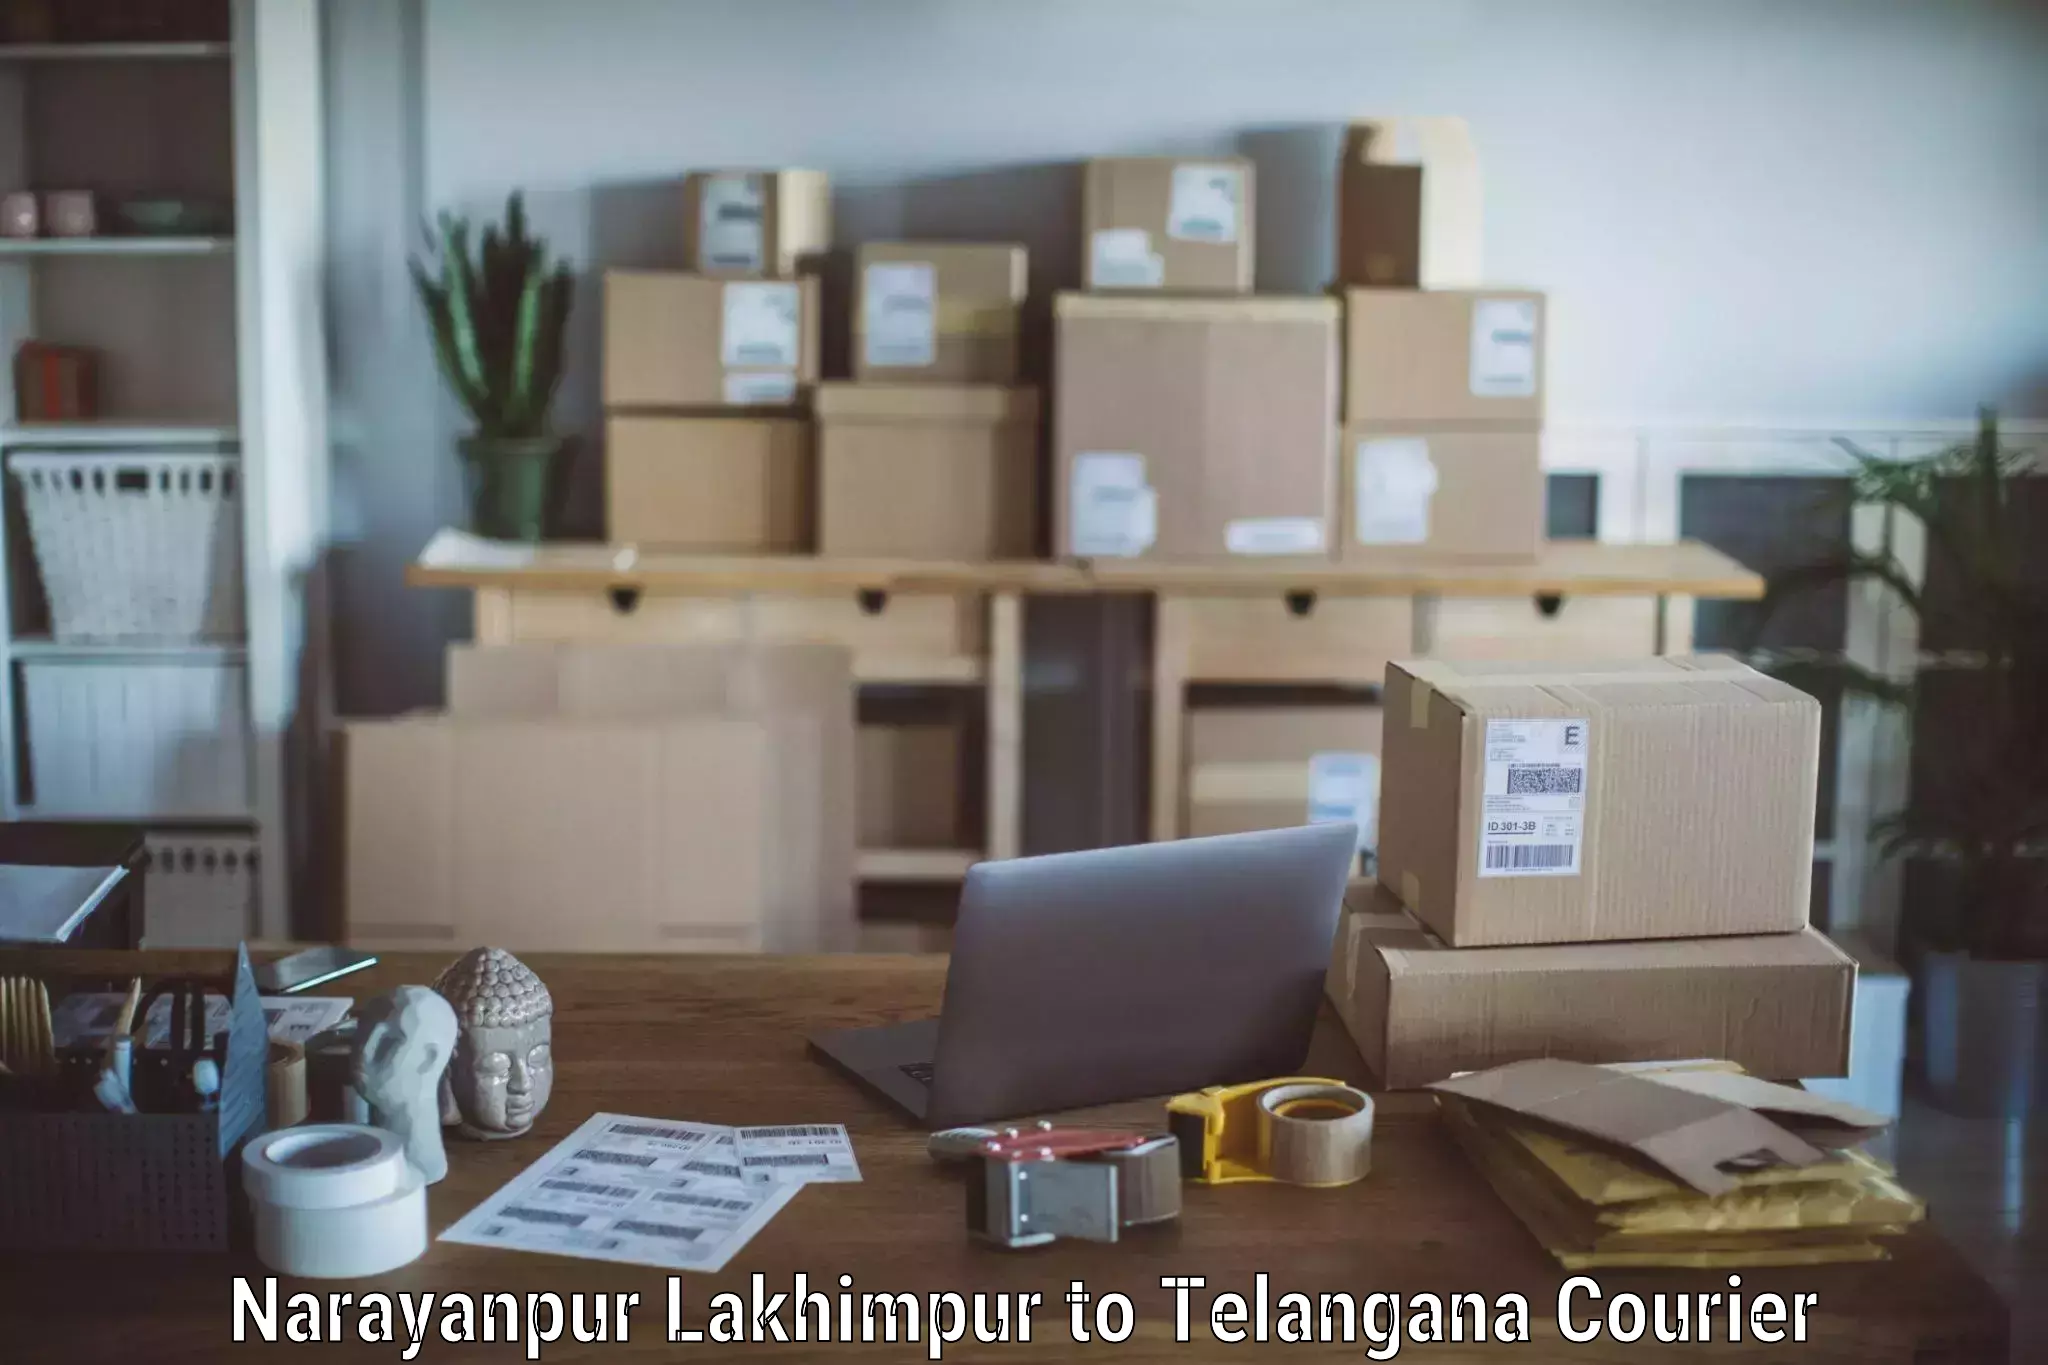 Professional furniture movers Narayanpur Lakhimpur to Sirikonda